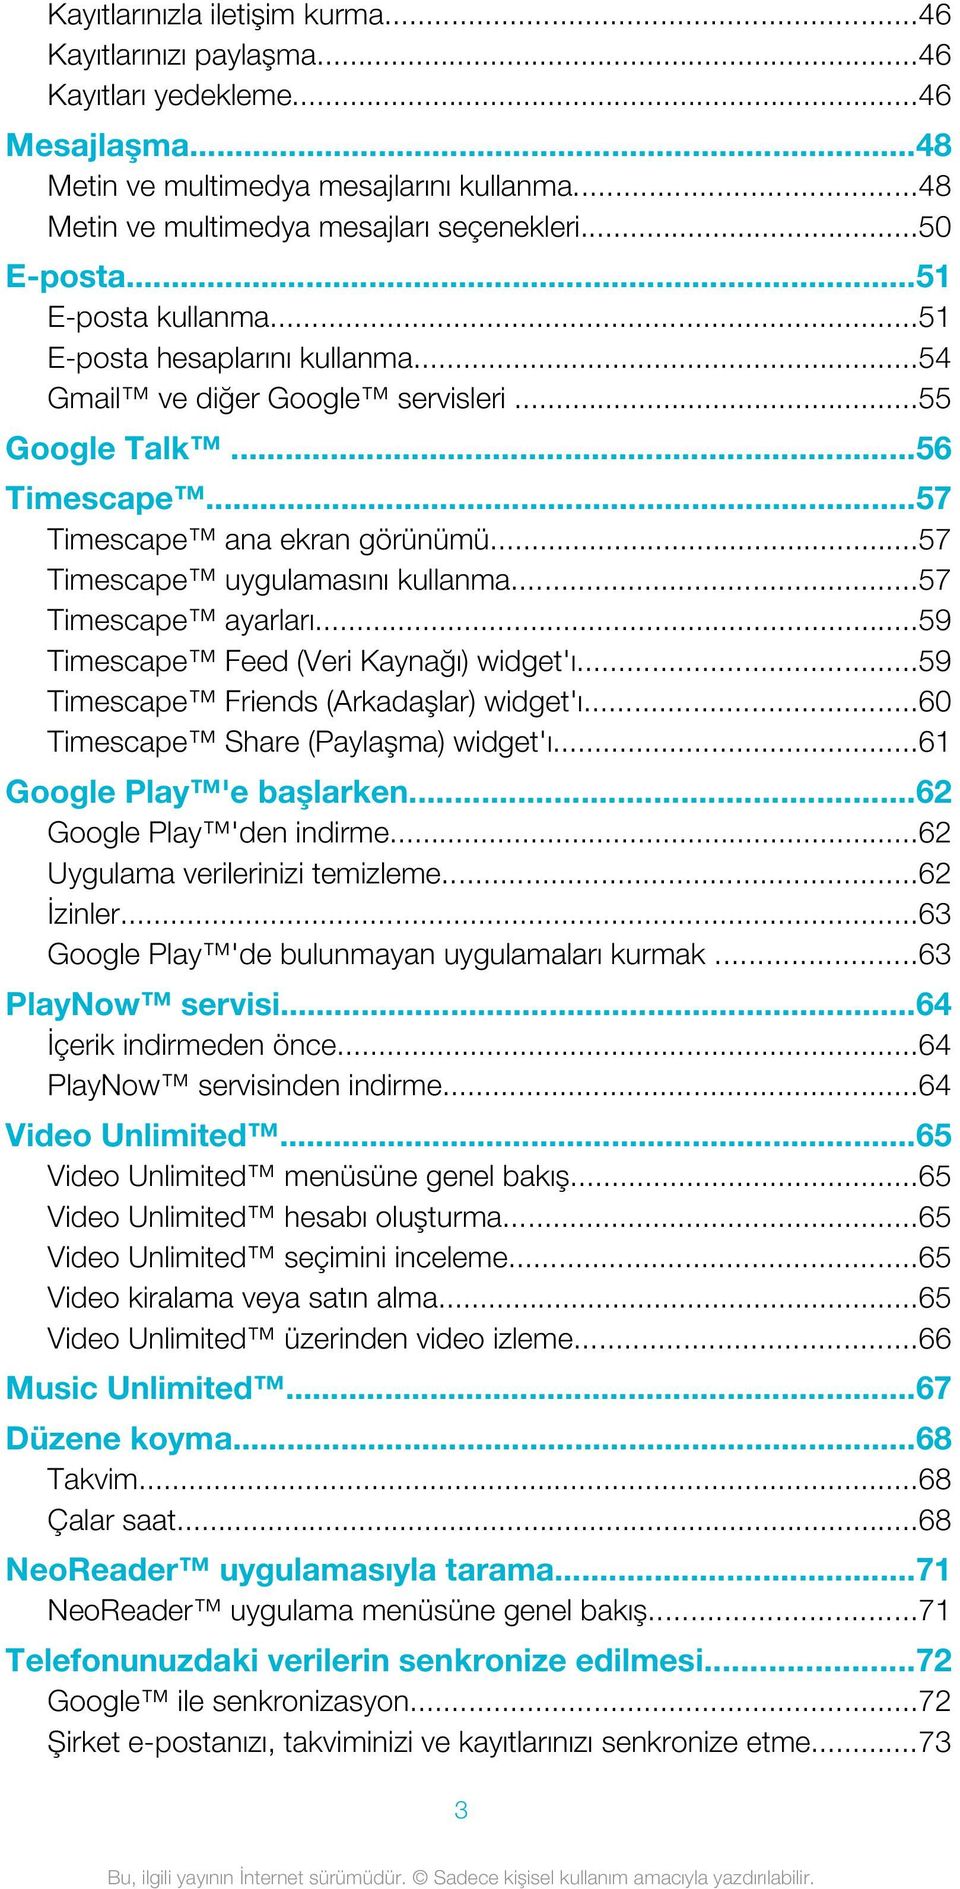 ..57 Timescape uygulamasını kullanma...57 Timescape ayarları...59 Timescape Feed (Veri Kaynağı) widget'ı...59 Timescape Friends (Arkadaşlar) widget'ı...60 Timescape Share (Paylaşma) widget'ı.